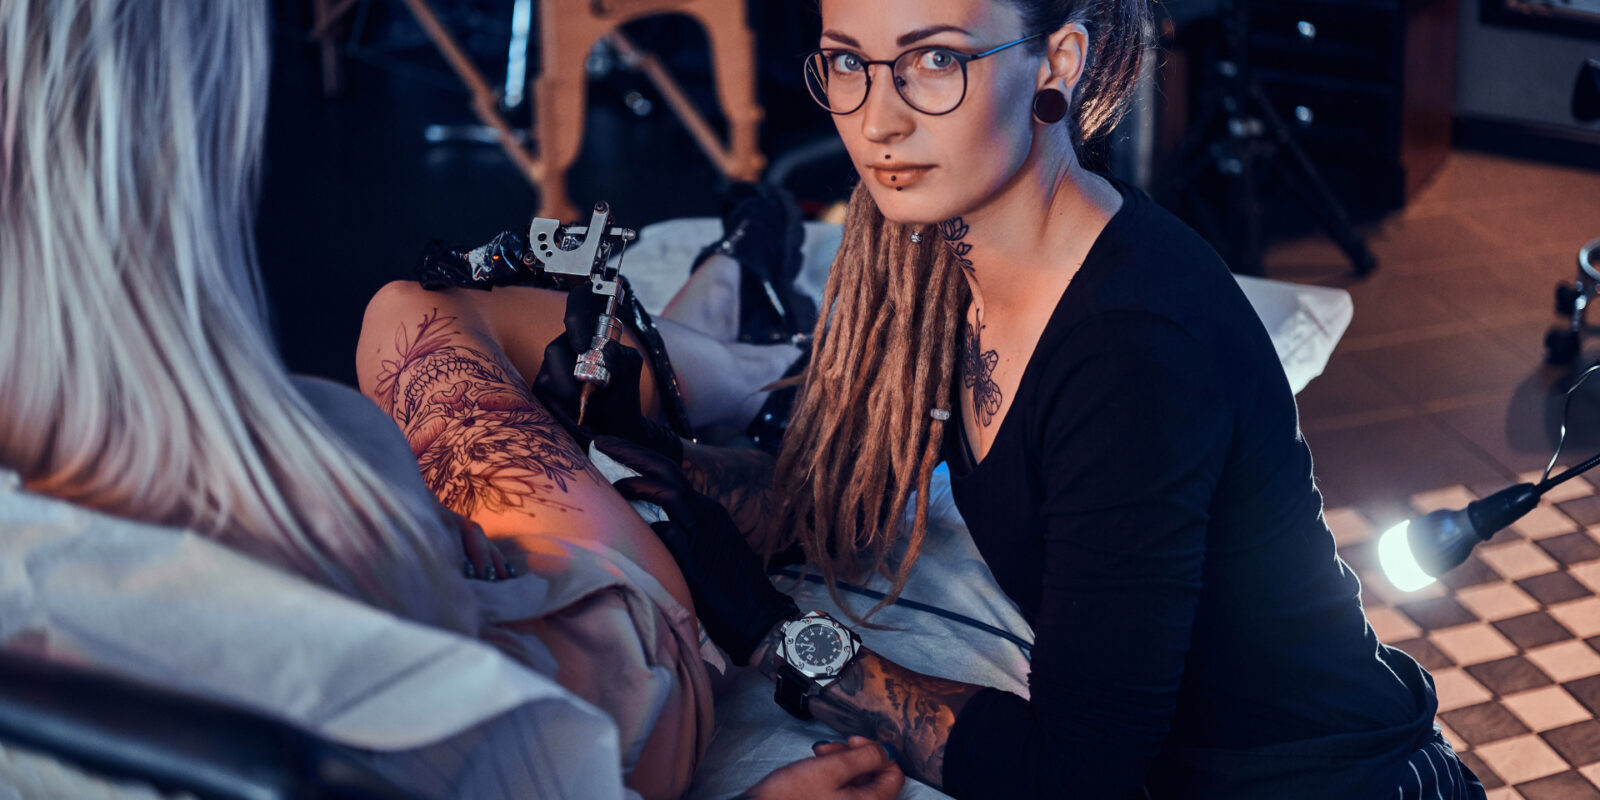 Frauen mit Tattoos Charakter: Was tätowierte Frauen verraten